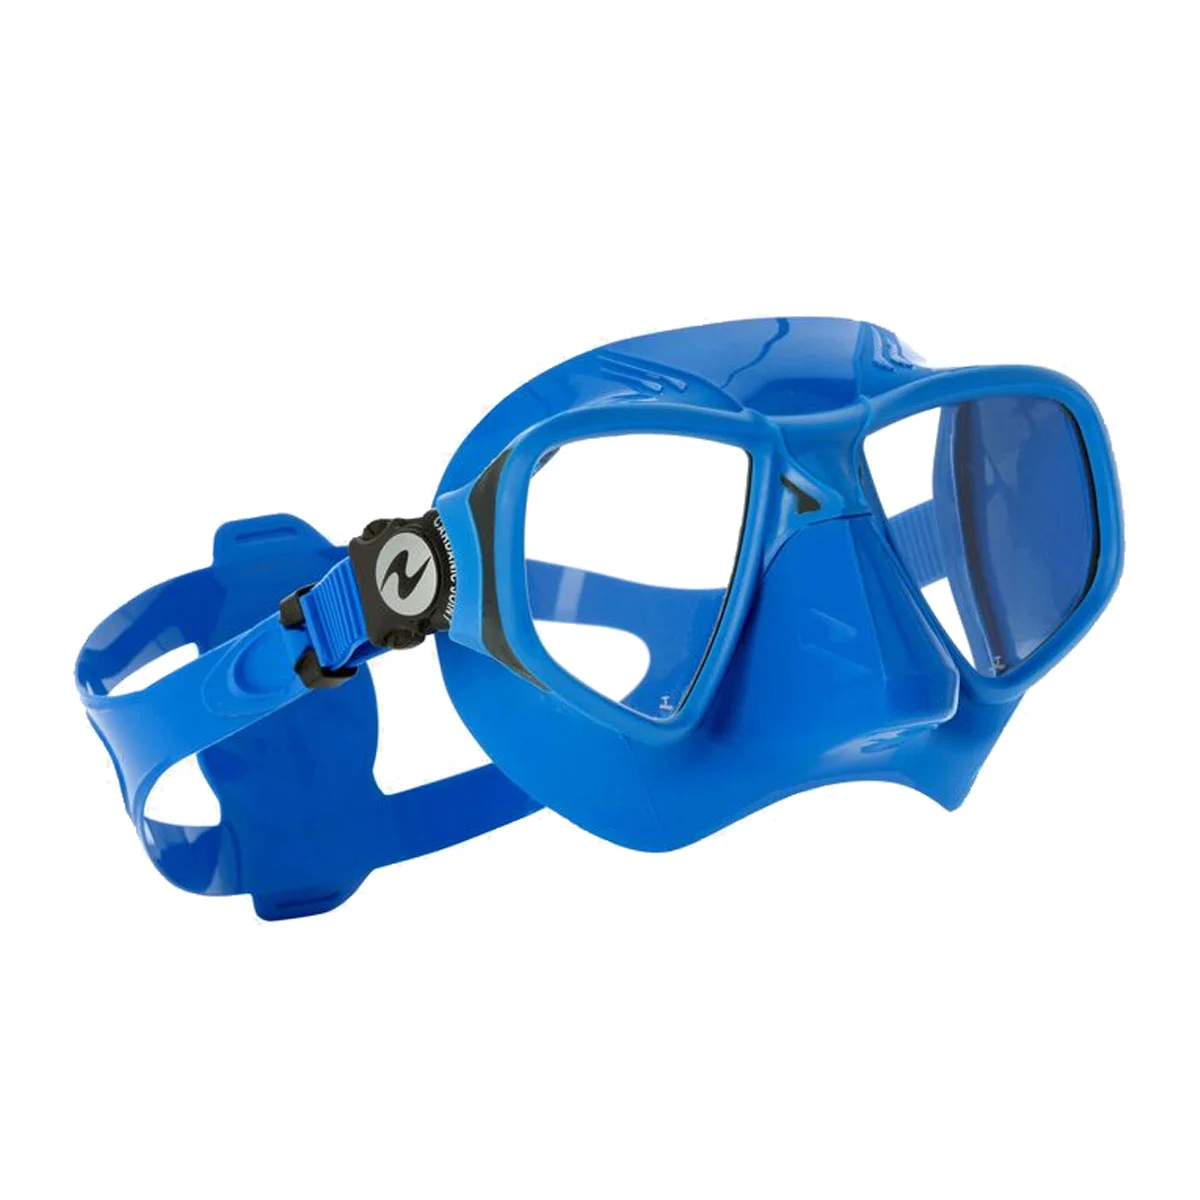 Máscara de buceo Seac Extreme 50 con lentes transparentes negro